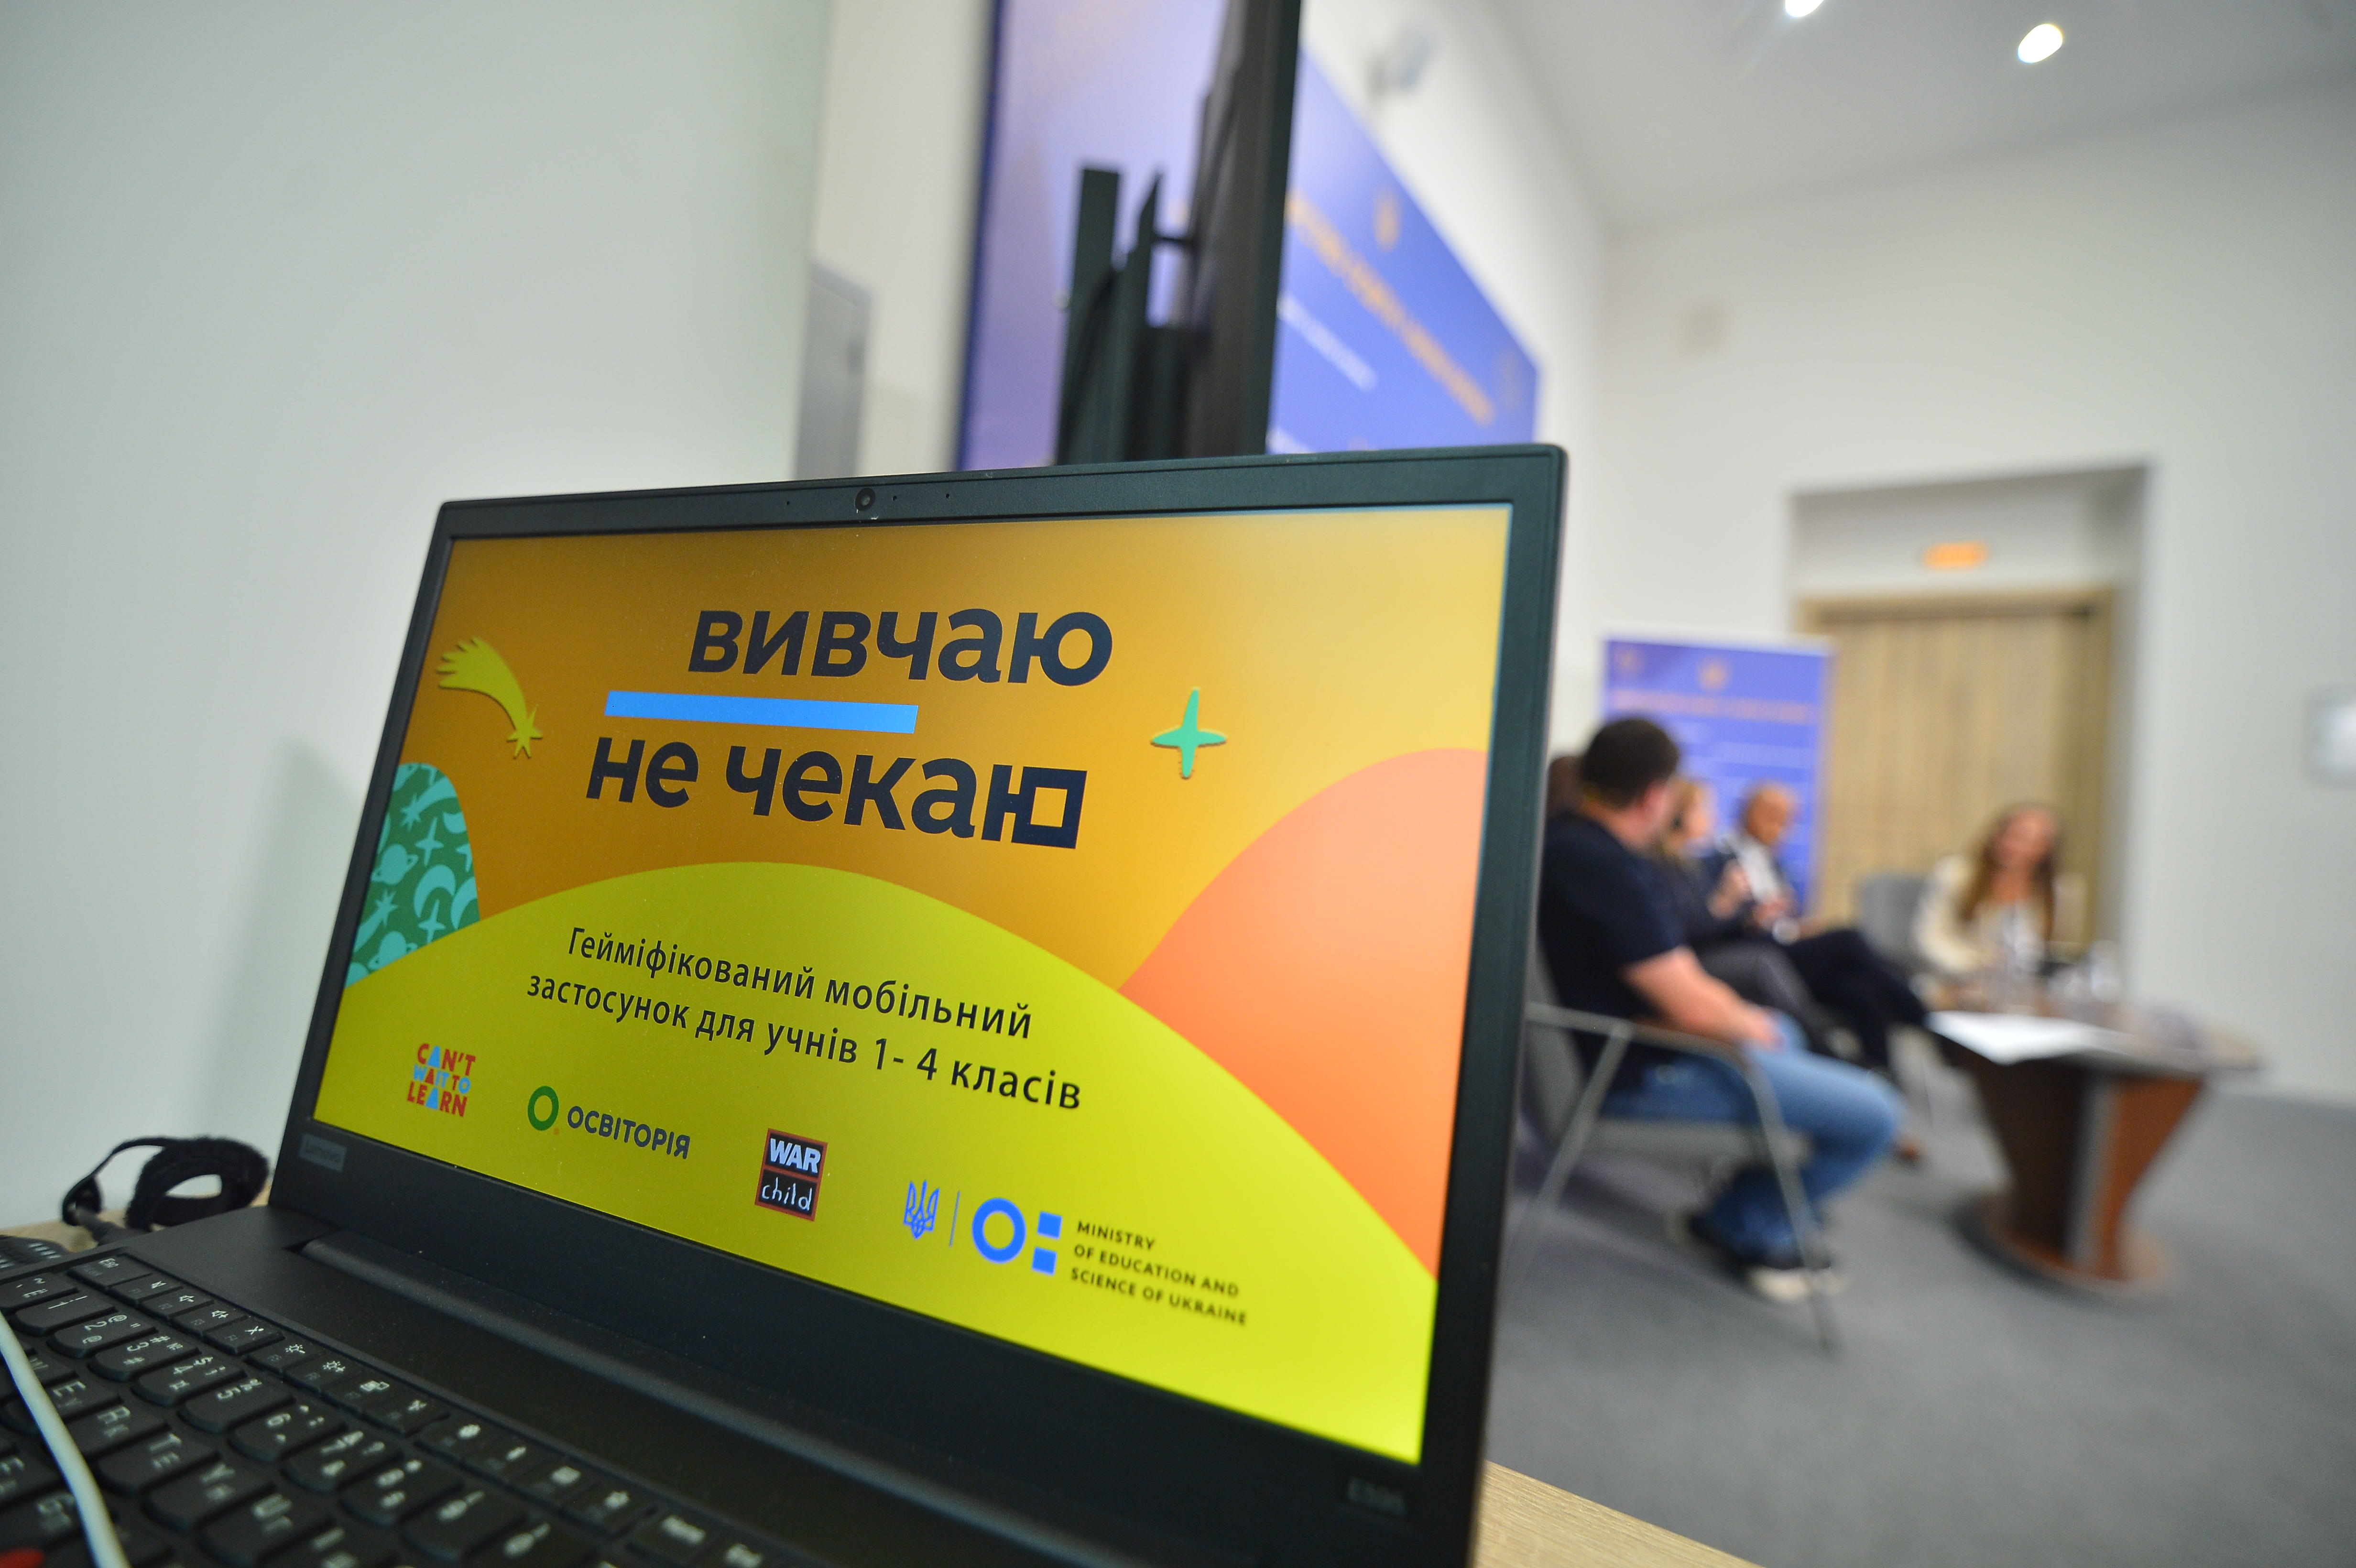 «Вивчаю – не чекаю»: презентовано мобільний застосунок, який допоможе учням 1-4 класів вивчати математику за українською програмою